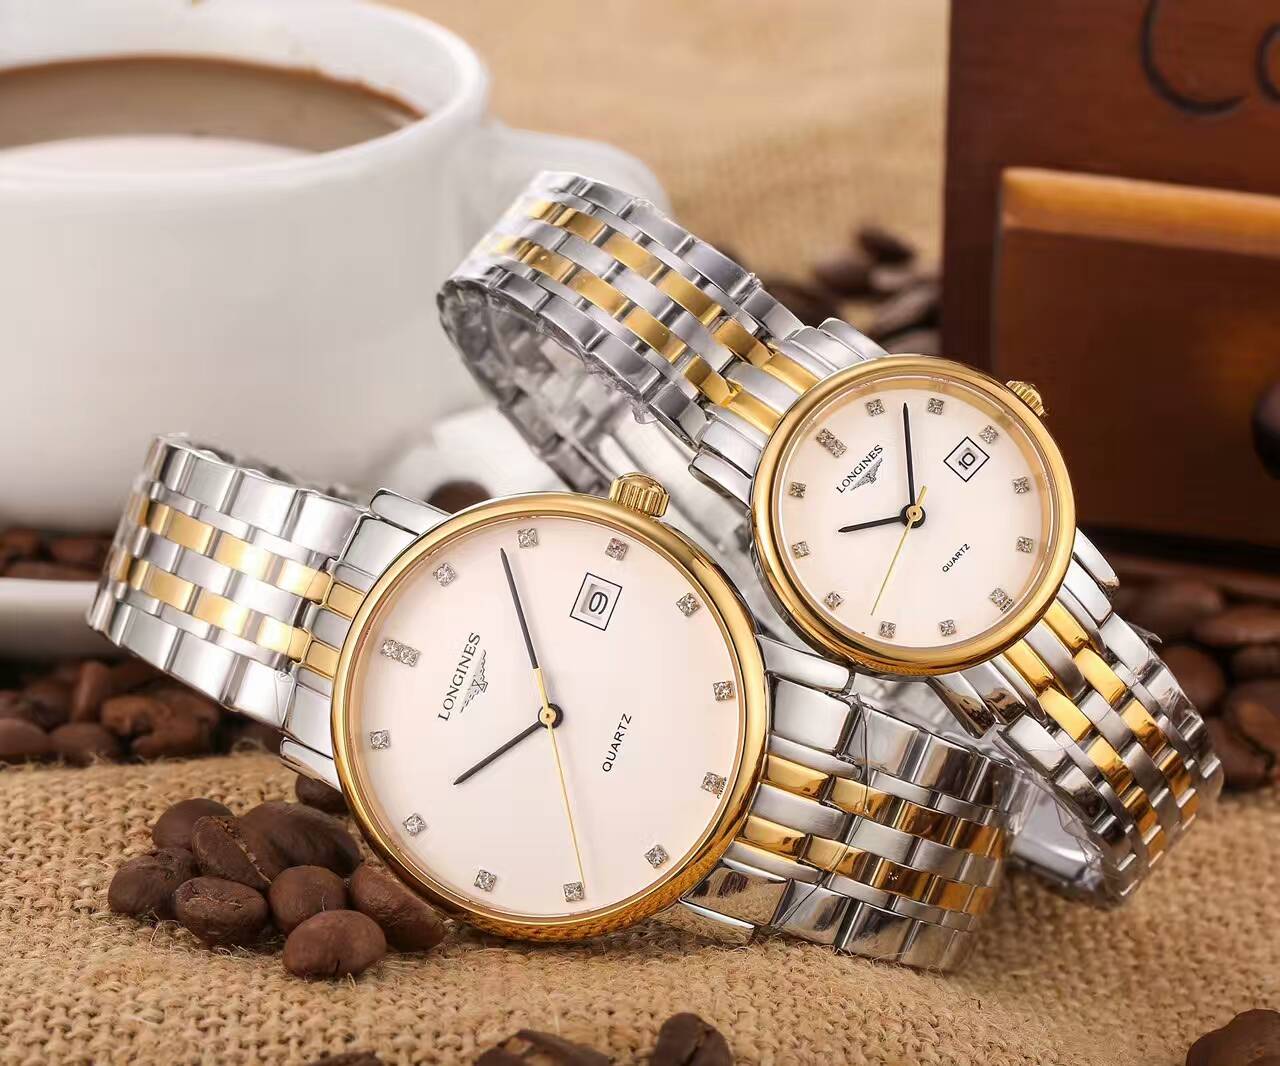 浪琴 頂級機械機芯 藍寶水晶鏡面 精鋼錶帶 316精鋼 頂級品質 精品情侶腕錶 -rhid-116942